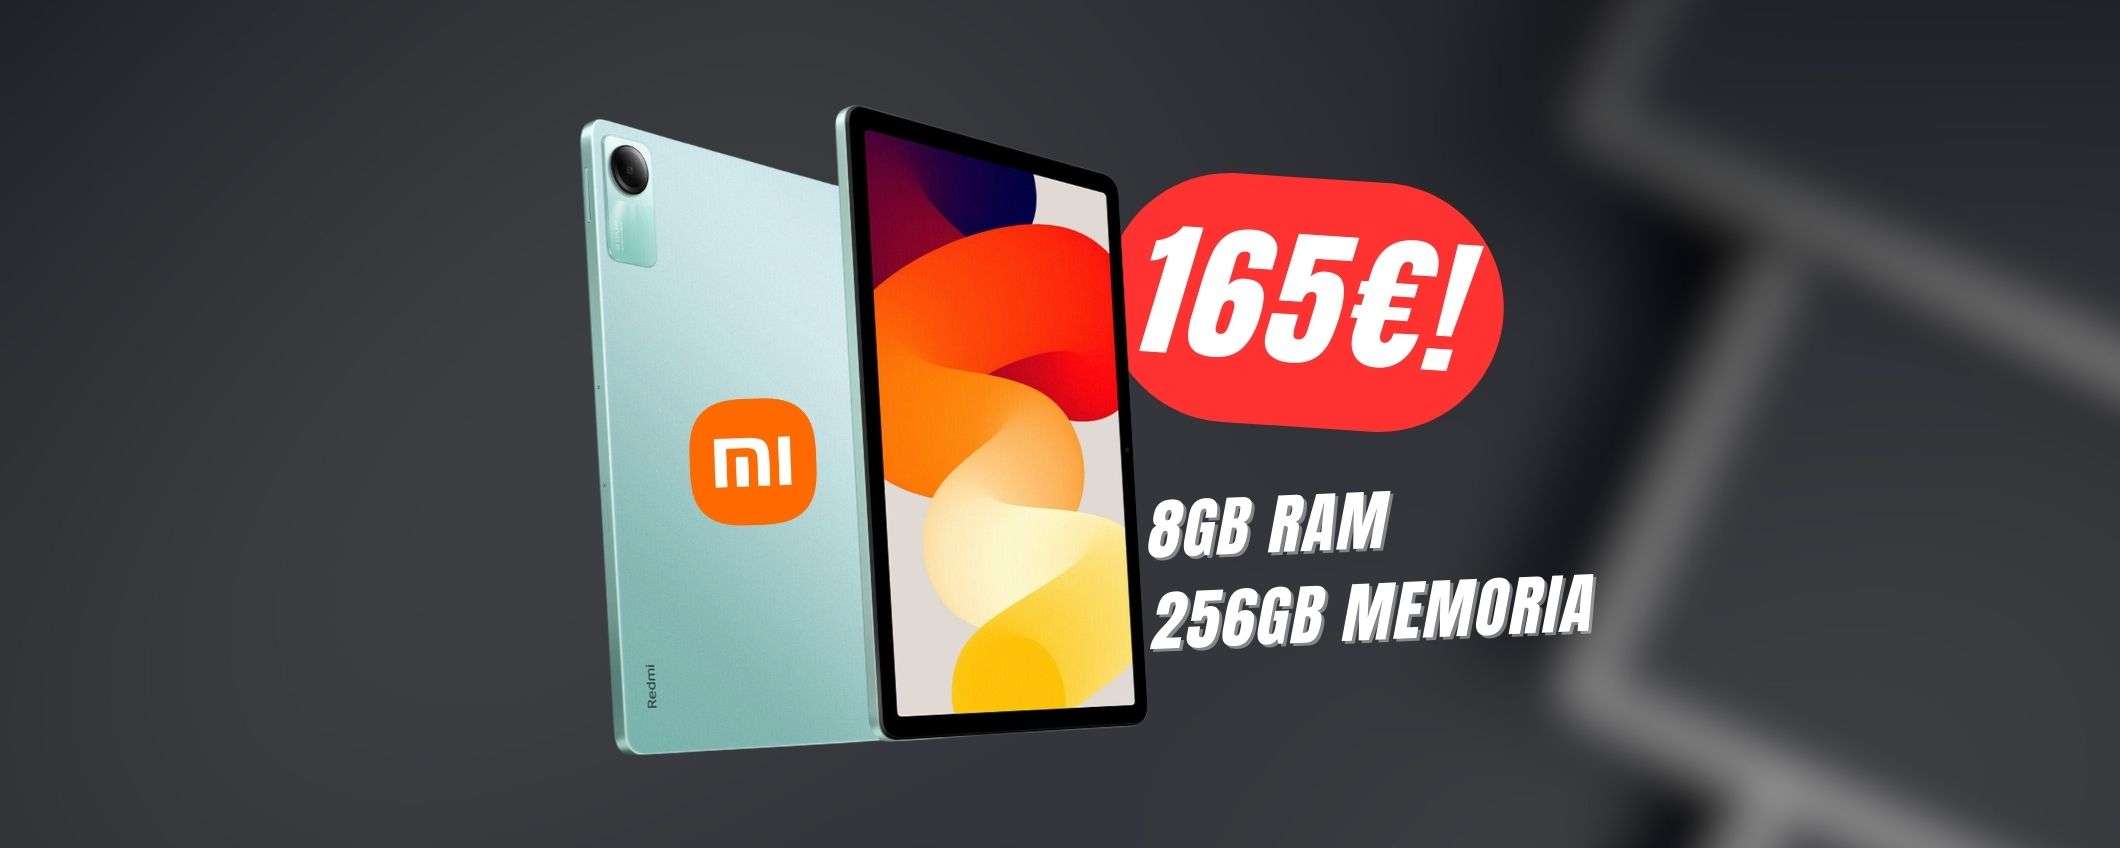 Tablet Xiaomi con 8GB+256GB a soli 165€ grazie a questo COUPON!